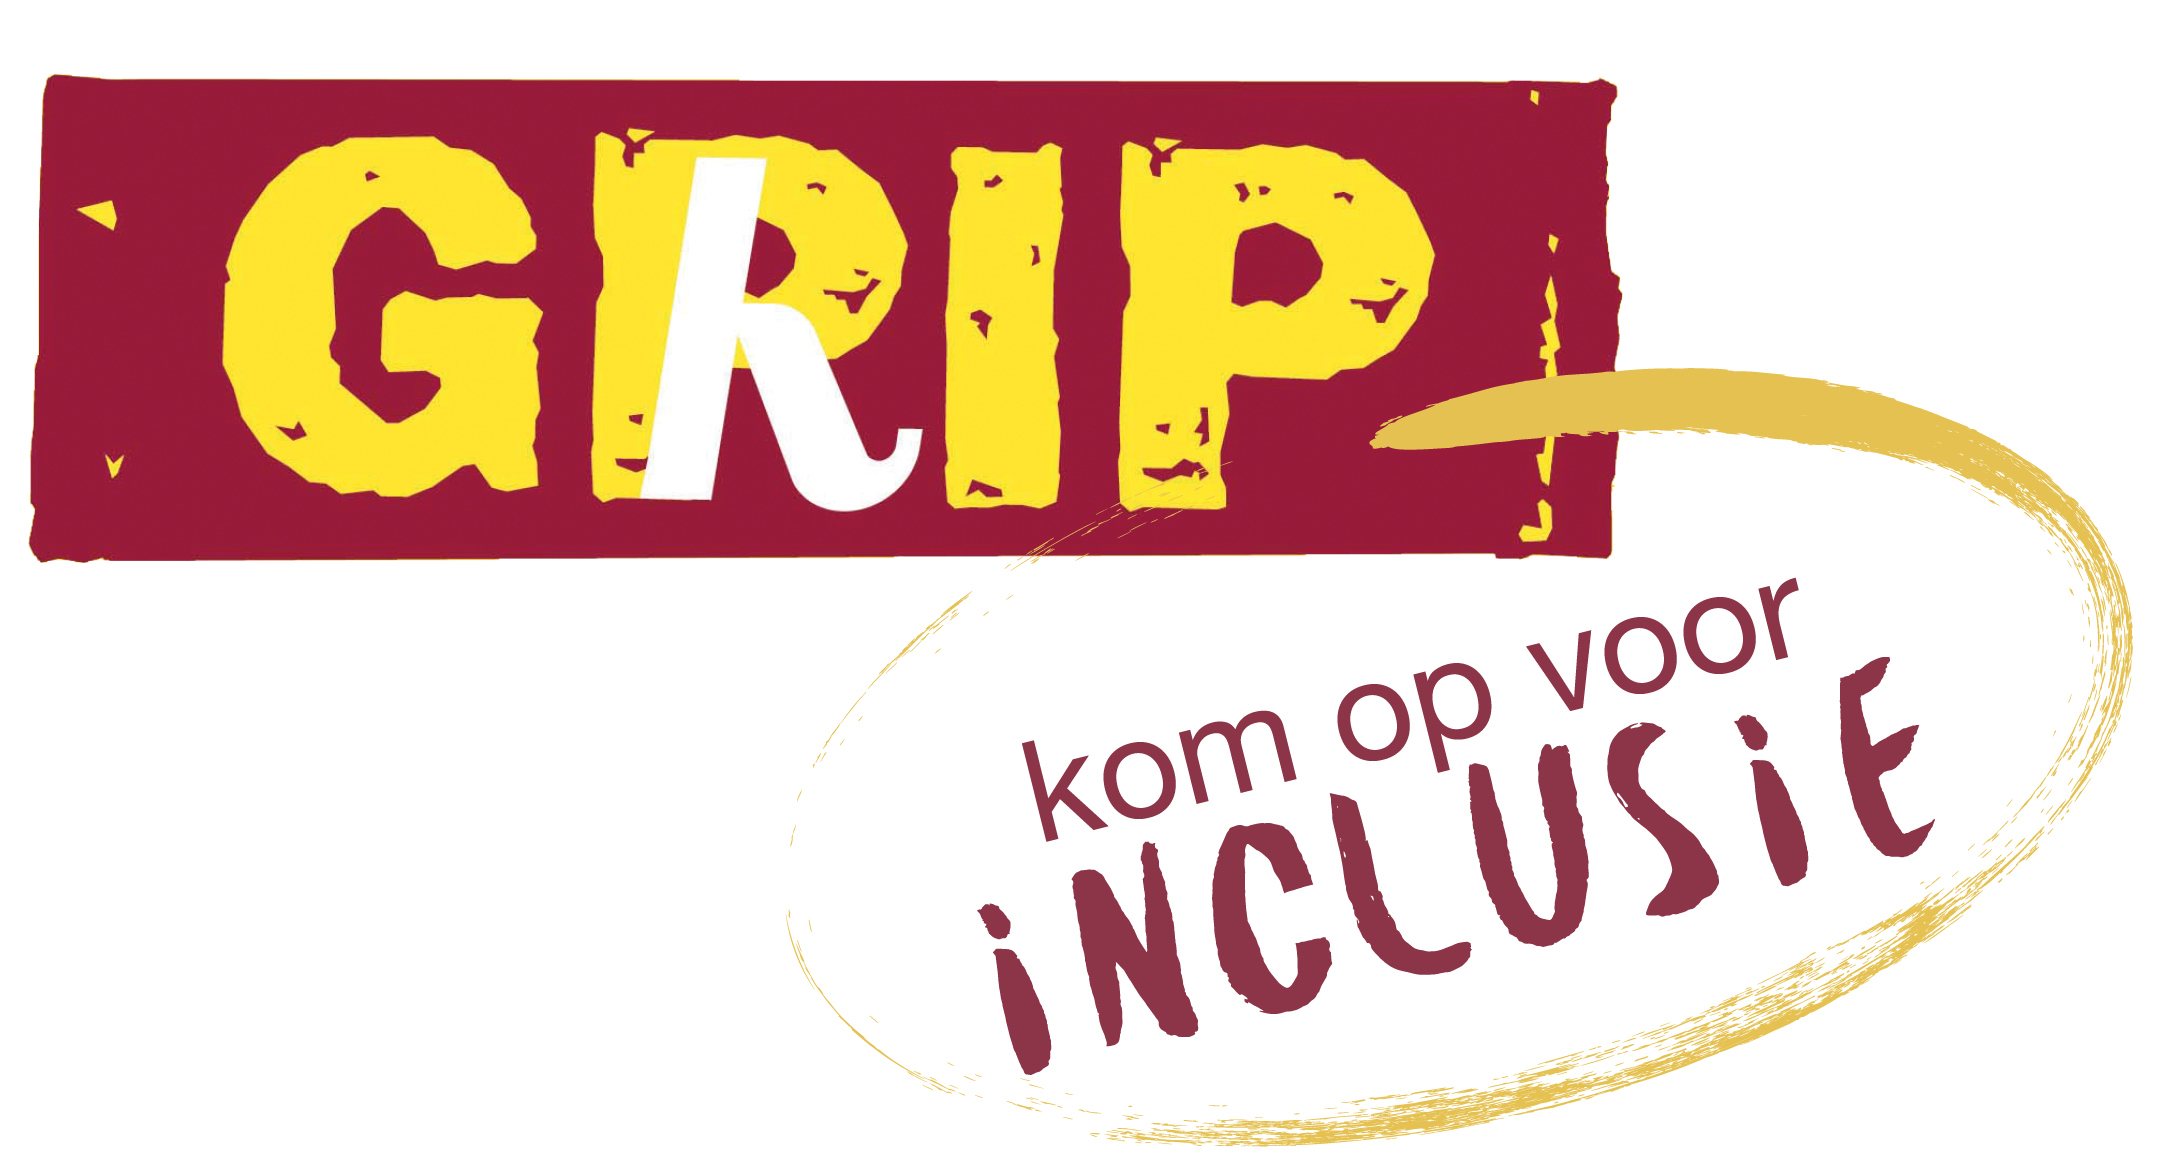 Logo van GRIP: GRIP staat in gele letters op een rode achtergrond en daaronder staat in een gele cirkel "kom op voor inclusie"